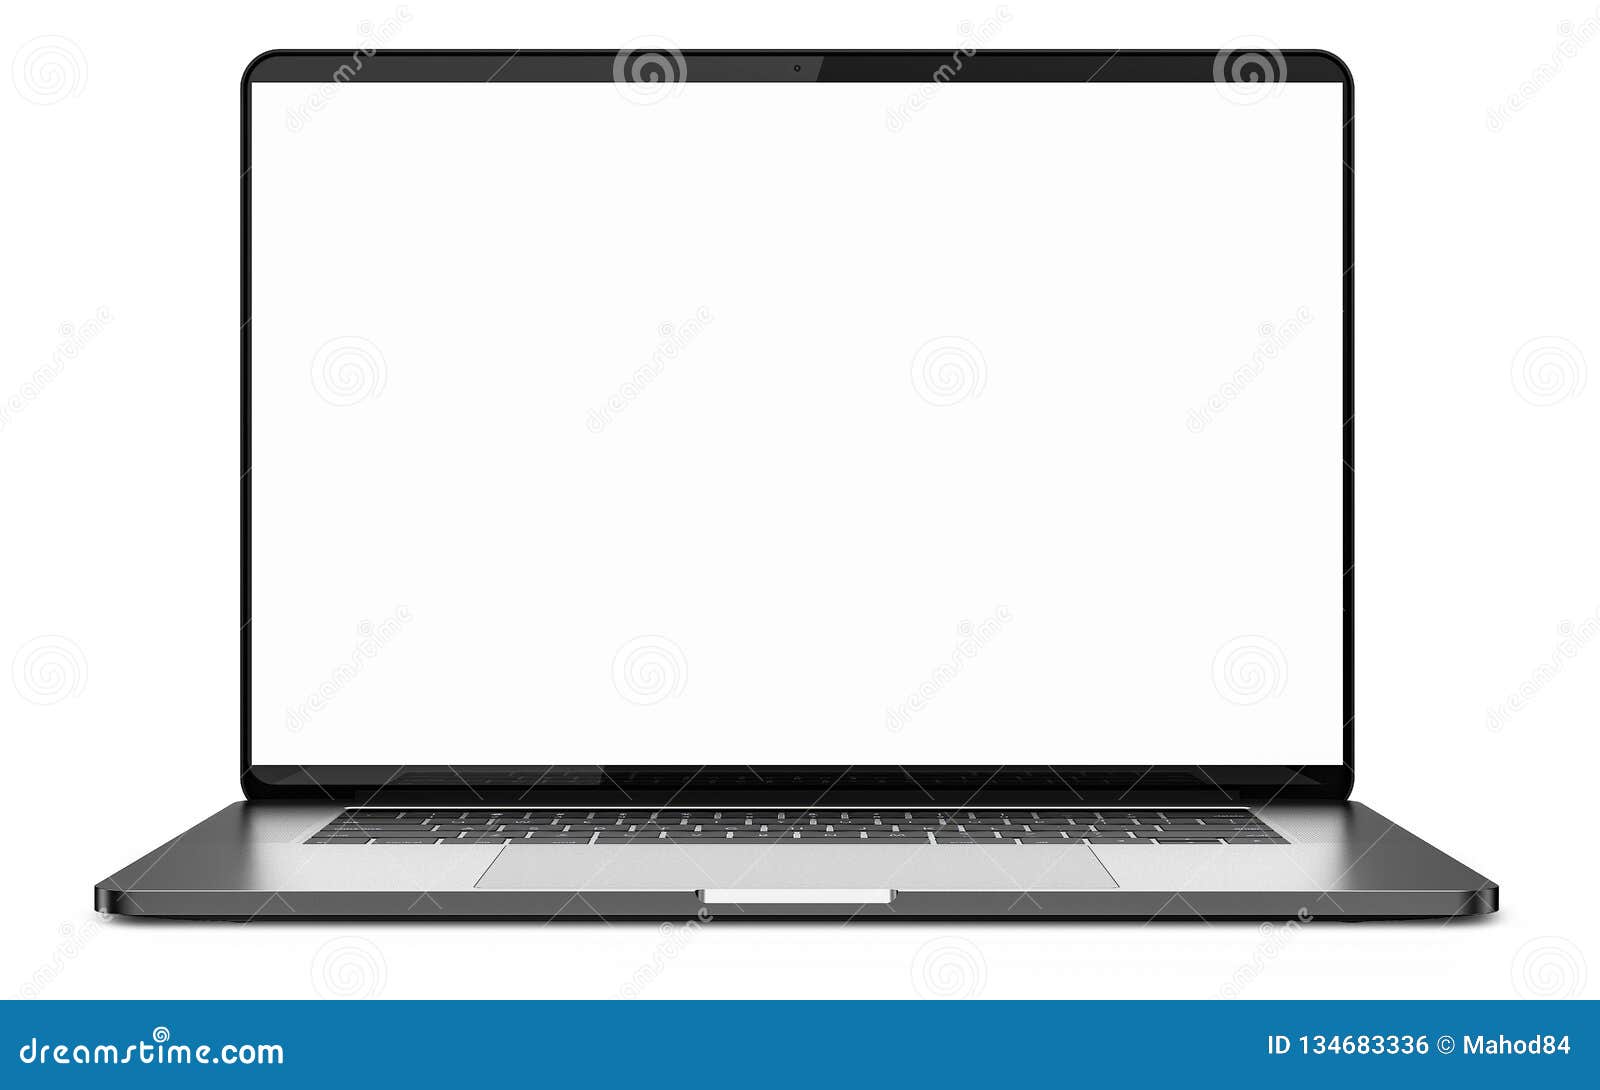 Laptop trắng vàng với màn hình trống trên nền trắng sáng là một sự lựa chọn hoàn hảo cho những ai yêu thích sự tối giản và sang trọng. Hãy truy cập vào hình ảnh để khám phá chi tiết chiếc laptop này.